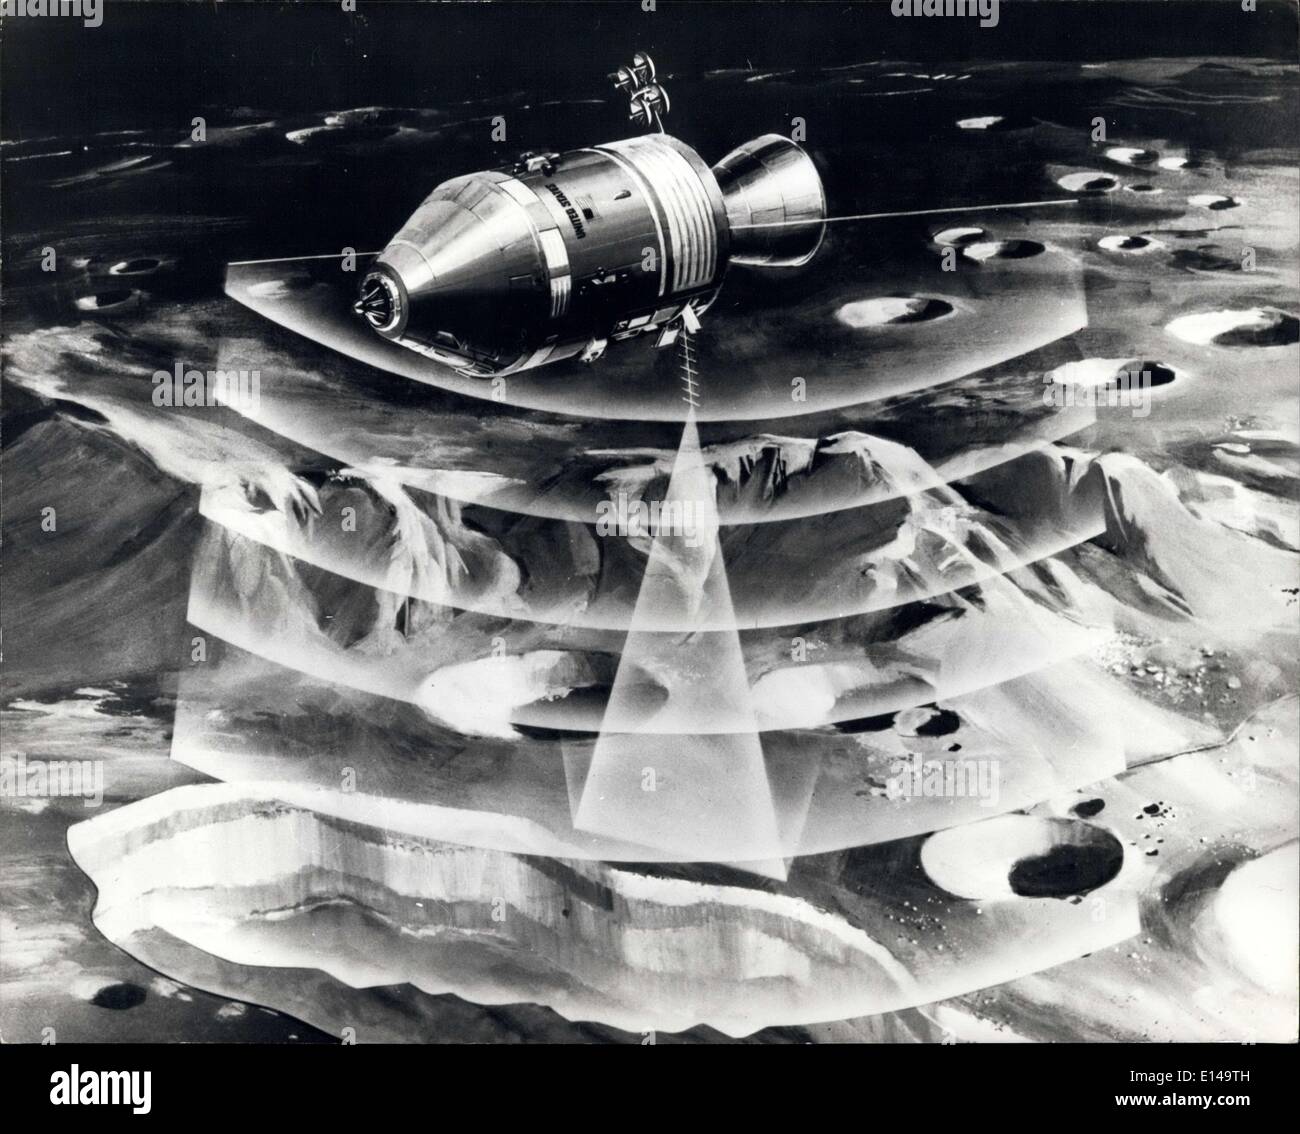 Abril 17, 2012 - Lunar ''Divining rod'': un concepto ilustra cómo los haces electrónicos del Apolo 17's sistema de sondeo lunar probará Luna hasta las tres cuartas partes de una milla (1.6 Km) - desde la órbita lunar para ayudar en la elaboración de mapas geológicos del subsuelo para identificar características como por debajo de la superficie metálica y depósitos de agua. Prototipo de "varilla ivining lunar", desarrollado por la North American Rockwell (NR), la división de Espacio fue probado en vuelo seleccionado sitios de tierra por ingenieros de la Administración Nacional de Aeronáutica y del espacio del centro de naves espaciales tripuladas en Houston, Texas. Foto de stock